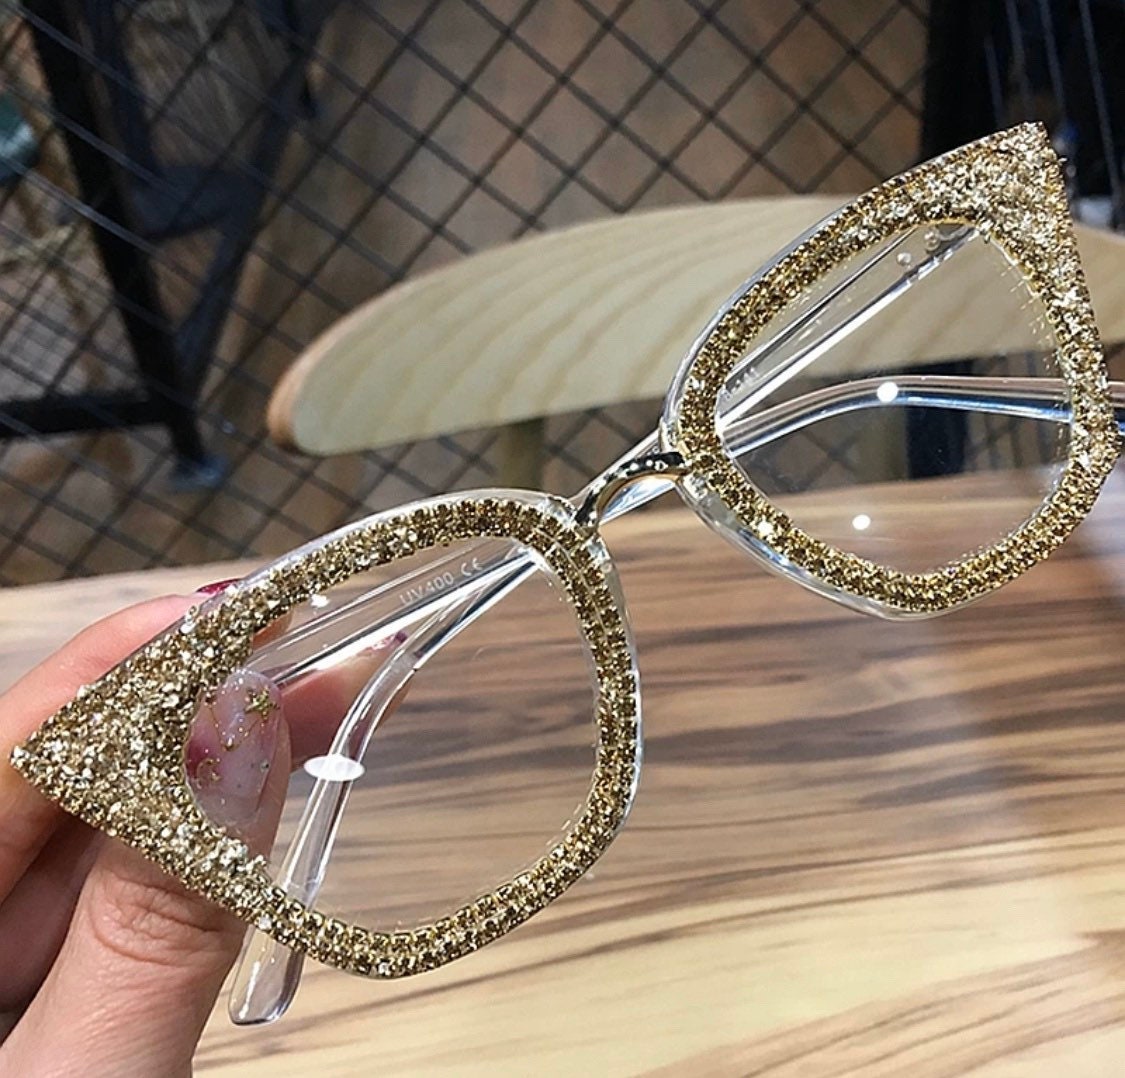 Shari Bling Cat Eye Glasses Frames - mix